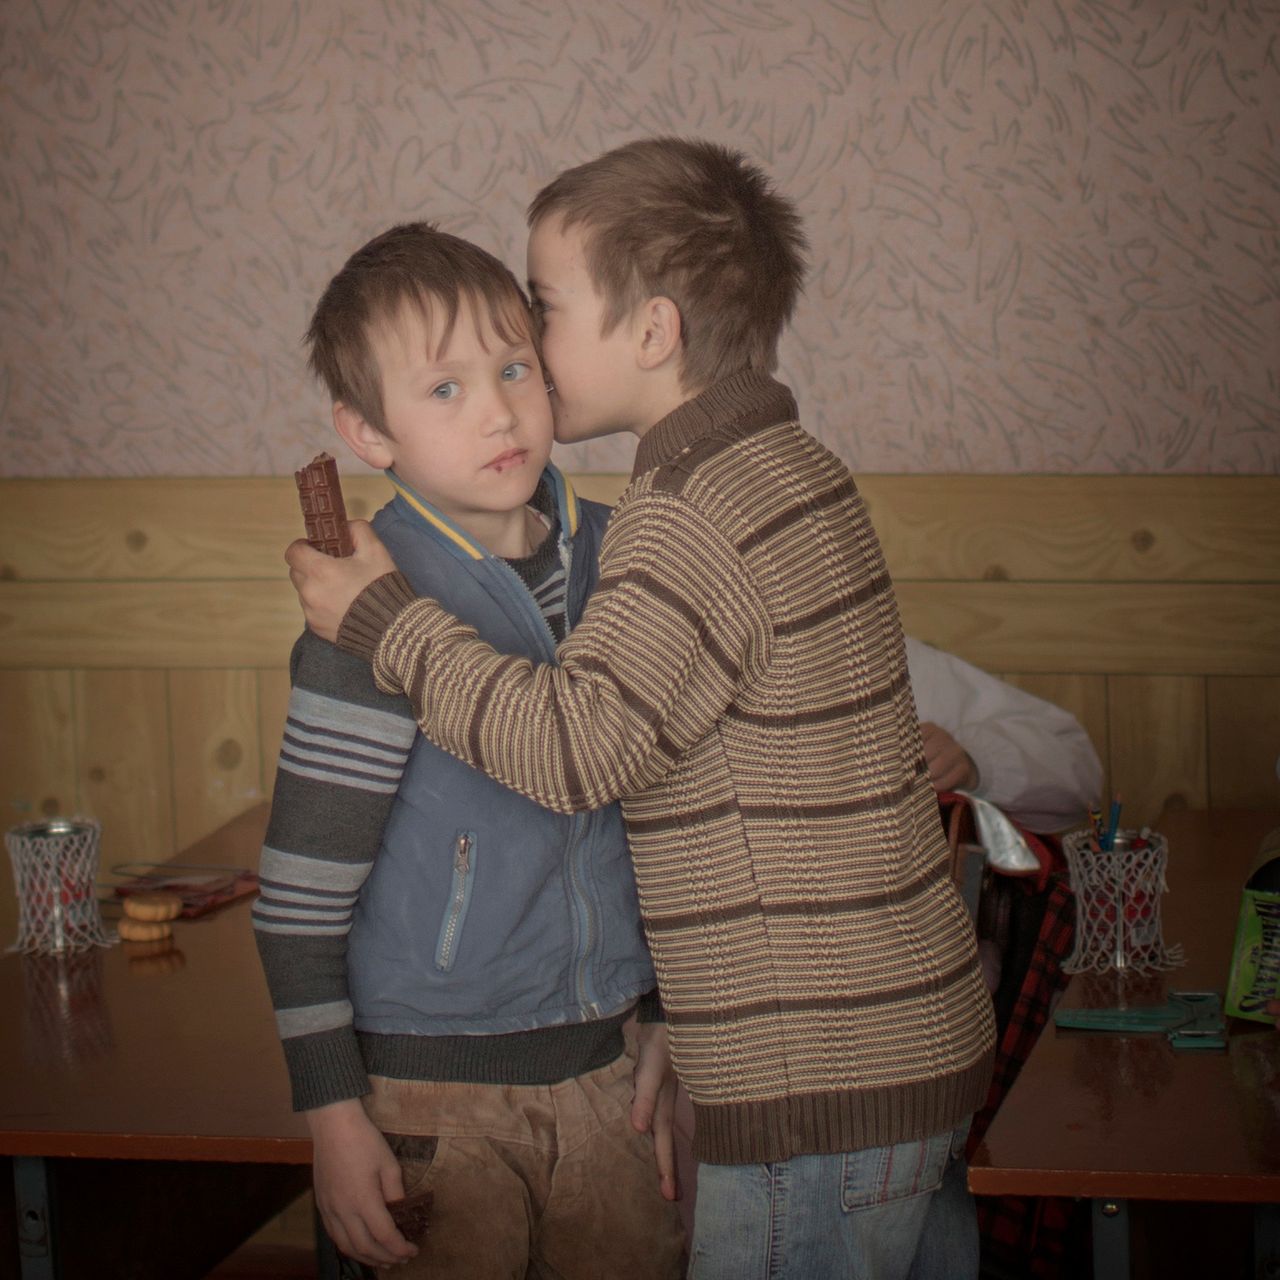 Drugie miejsce w kategorii w kategorii - życie codzienne otrzymało zdjęcie bliźniaków Igora i Artura, którzy rozdają czekoladki wśród swoich kolegów szkolnych z okazji swoich 9 urodzin. Gdy mieli dwa lata ich matka pojechała do pracy do Moskwy, gdzie wkrótce zmarła. Chłopcy nie mają też ojca. Reprezentują tysiące mołdawskich dzieci wychowywanych bez rodziców. Młodzi ludzie uciekają z kraju pozostawiając zanikającą populację ludzi starszych i małych dzieci.